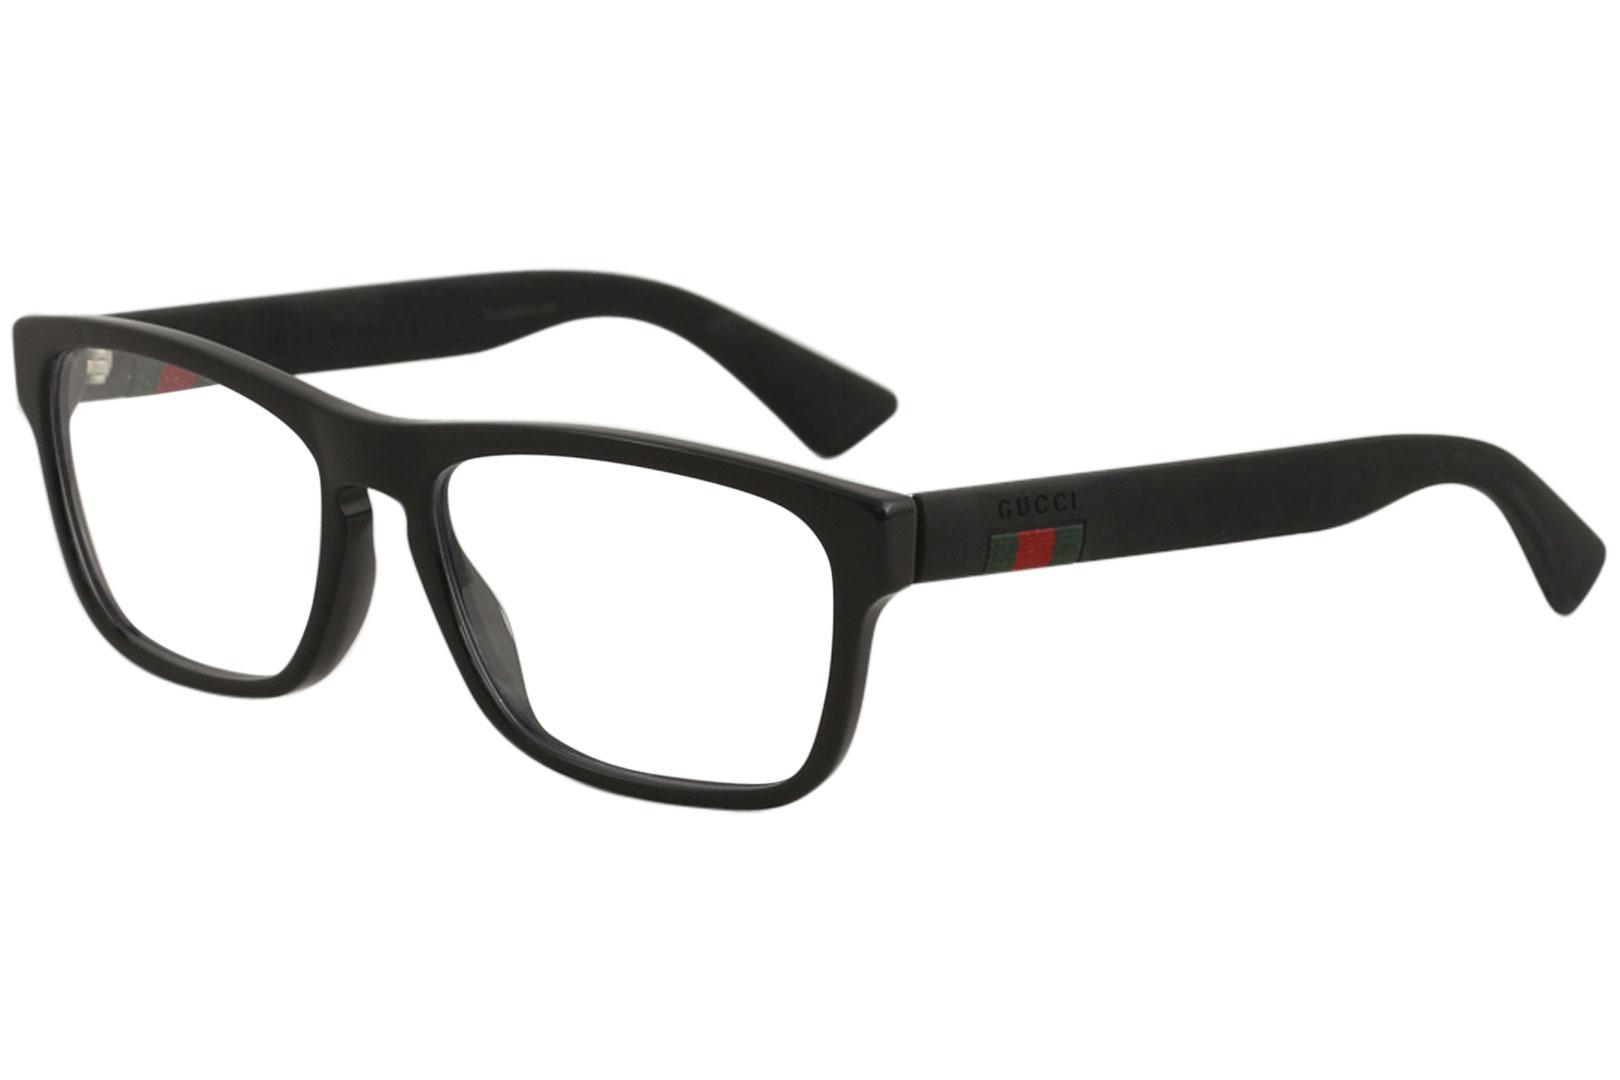 Gucci Men's Eyeglasses GG0174O GG/0174/O Full Rim Optical Frame - Black   005 - Lens 56 Bridge 17 Temple 145mm